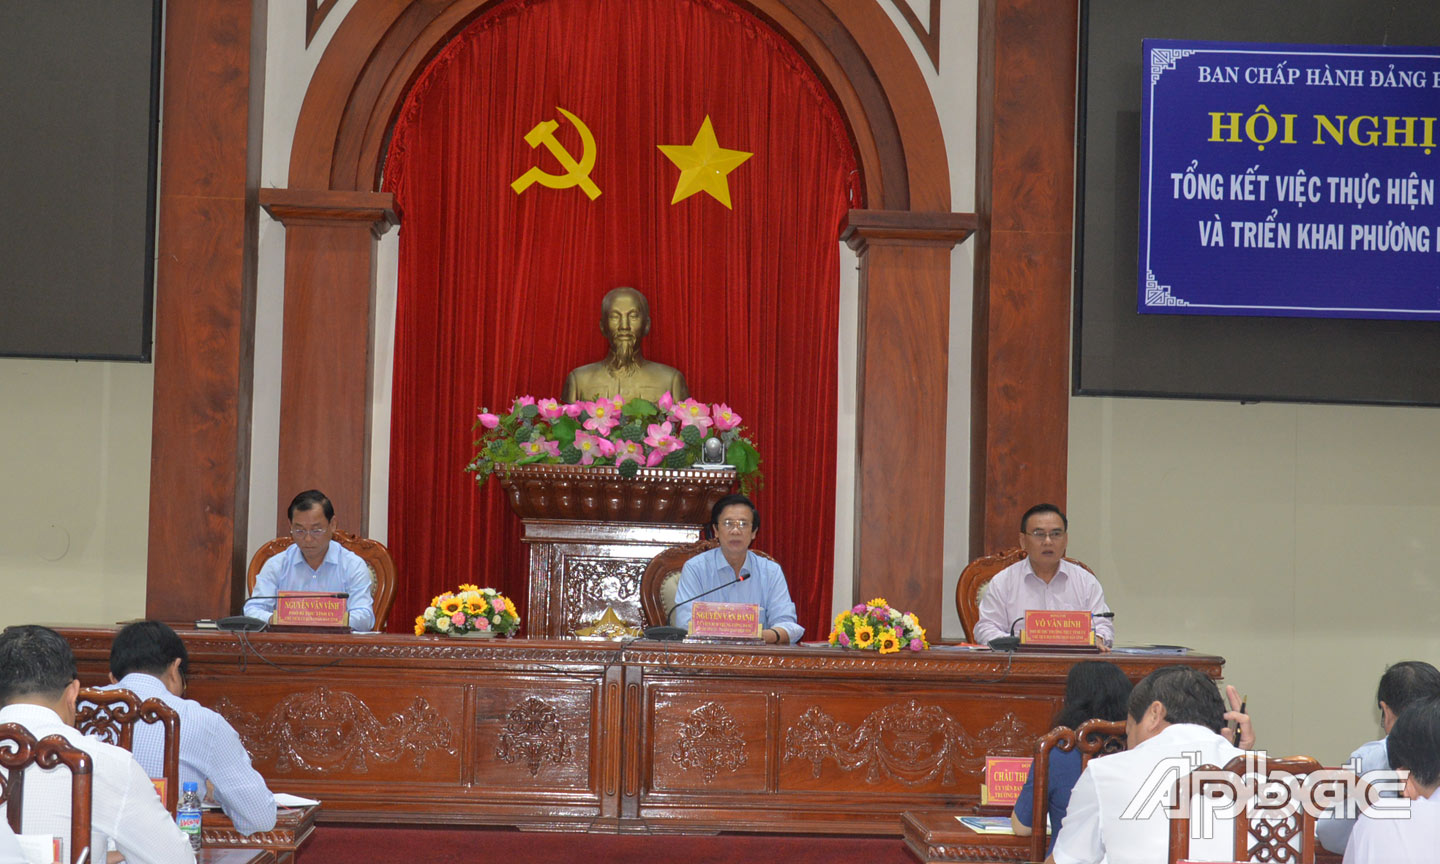 Đồng chí Nguyễn Văn Danh, đồng chí Võ Văn Bình và đồng chí Nguyễn Văn Vĩnh chủ trì hội nghị.